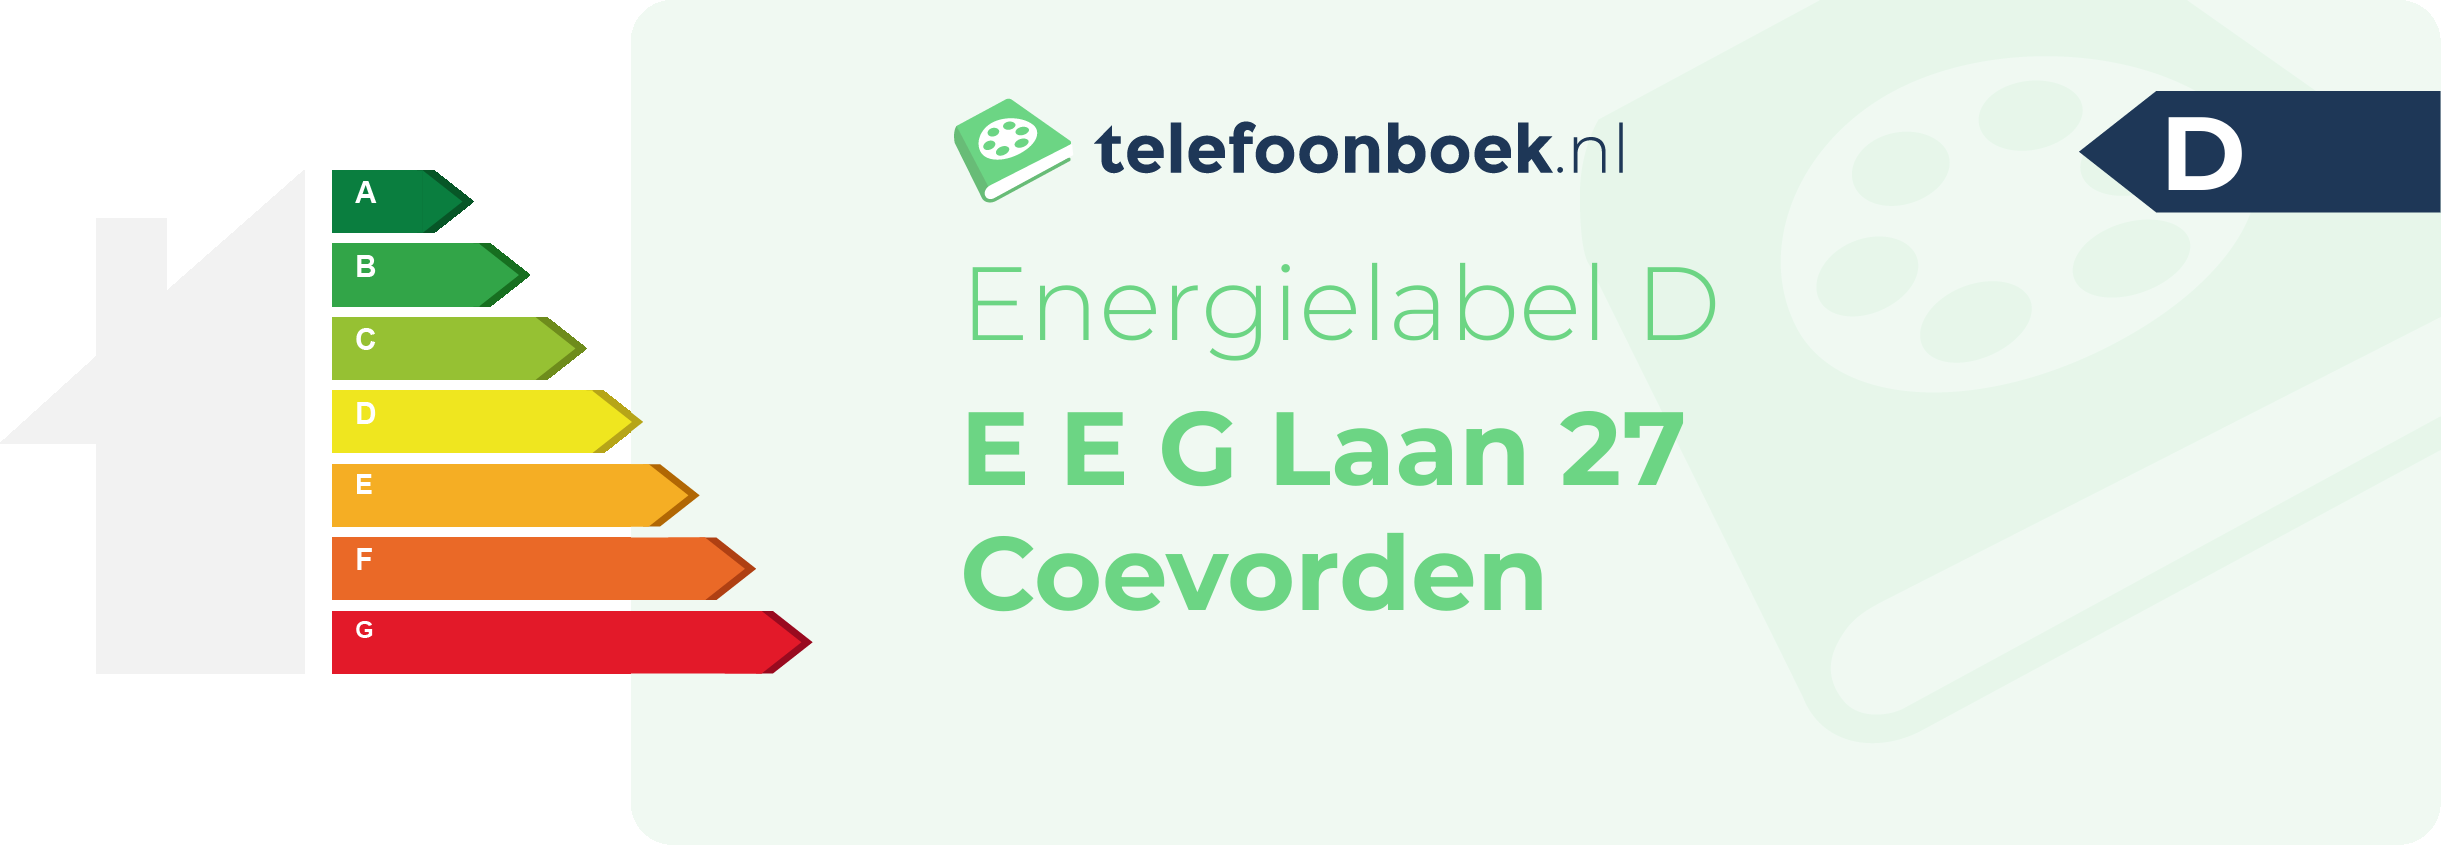 Energielabel E E G Laan 27 Coevorden